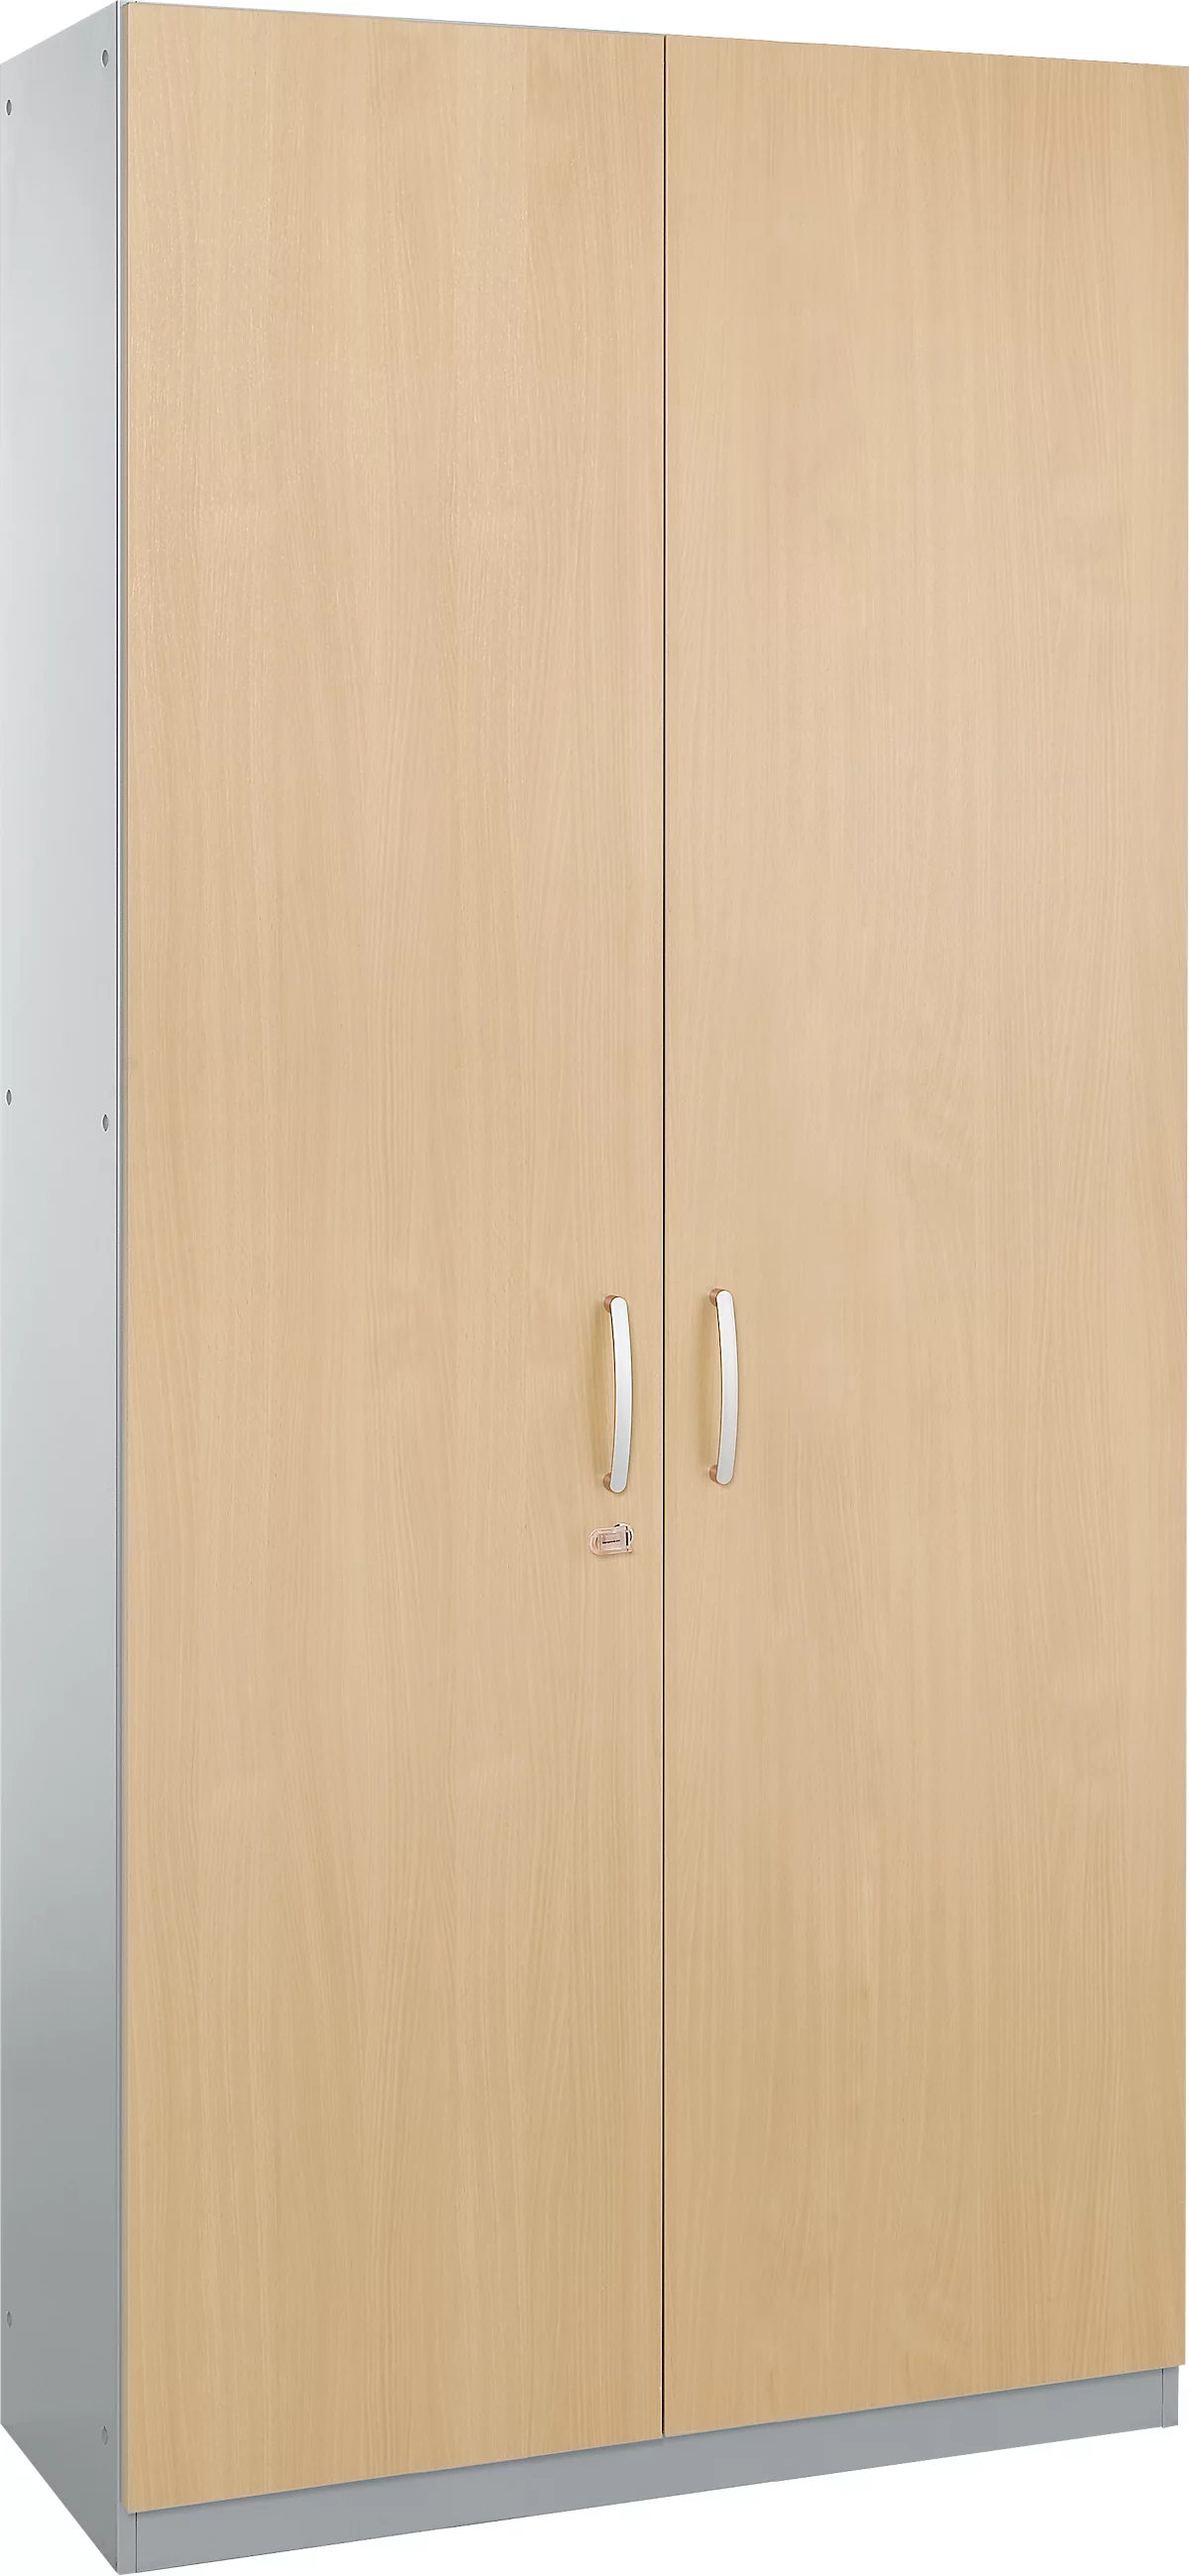 Schäfer Shop Genius Armario de puertas batientes TETRIS SOLID, cuerpo de acero, 5 AA, An 1200 mm, con cerradura, acabado en arce/aluminio blanco